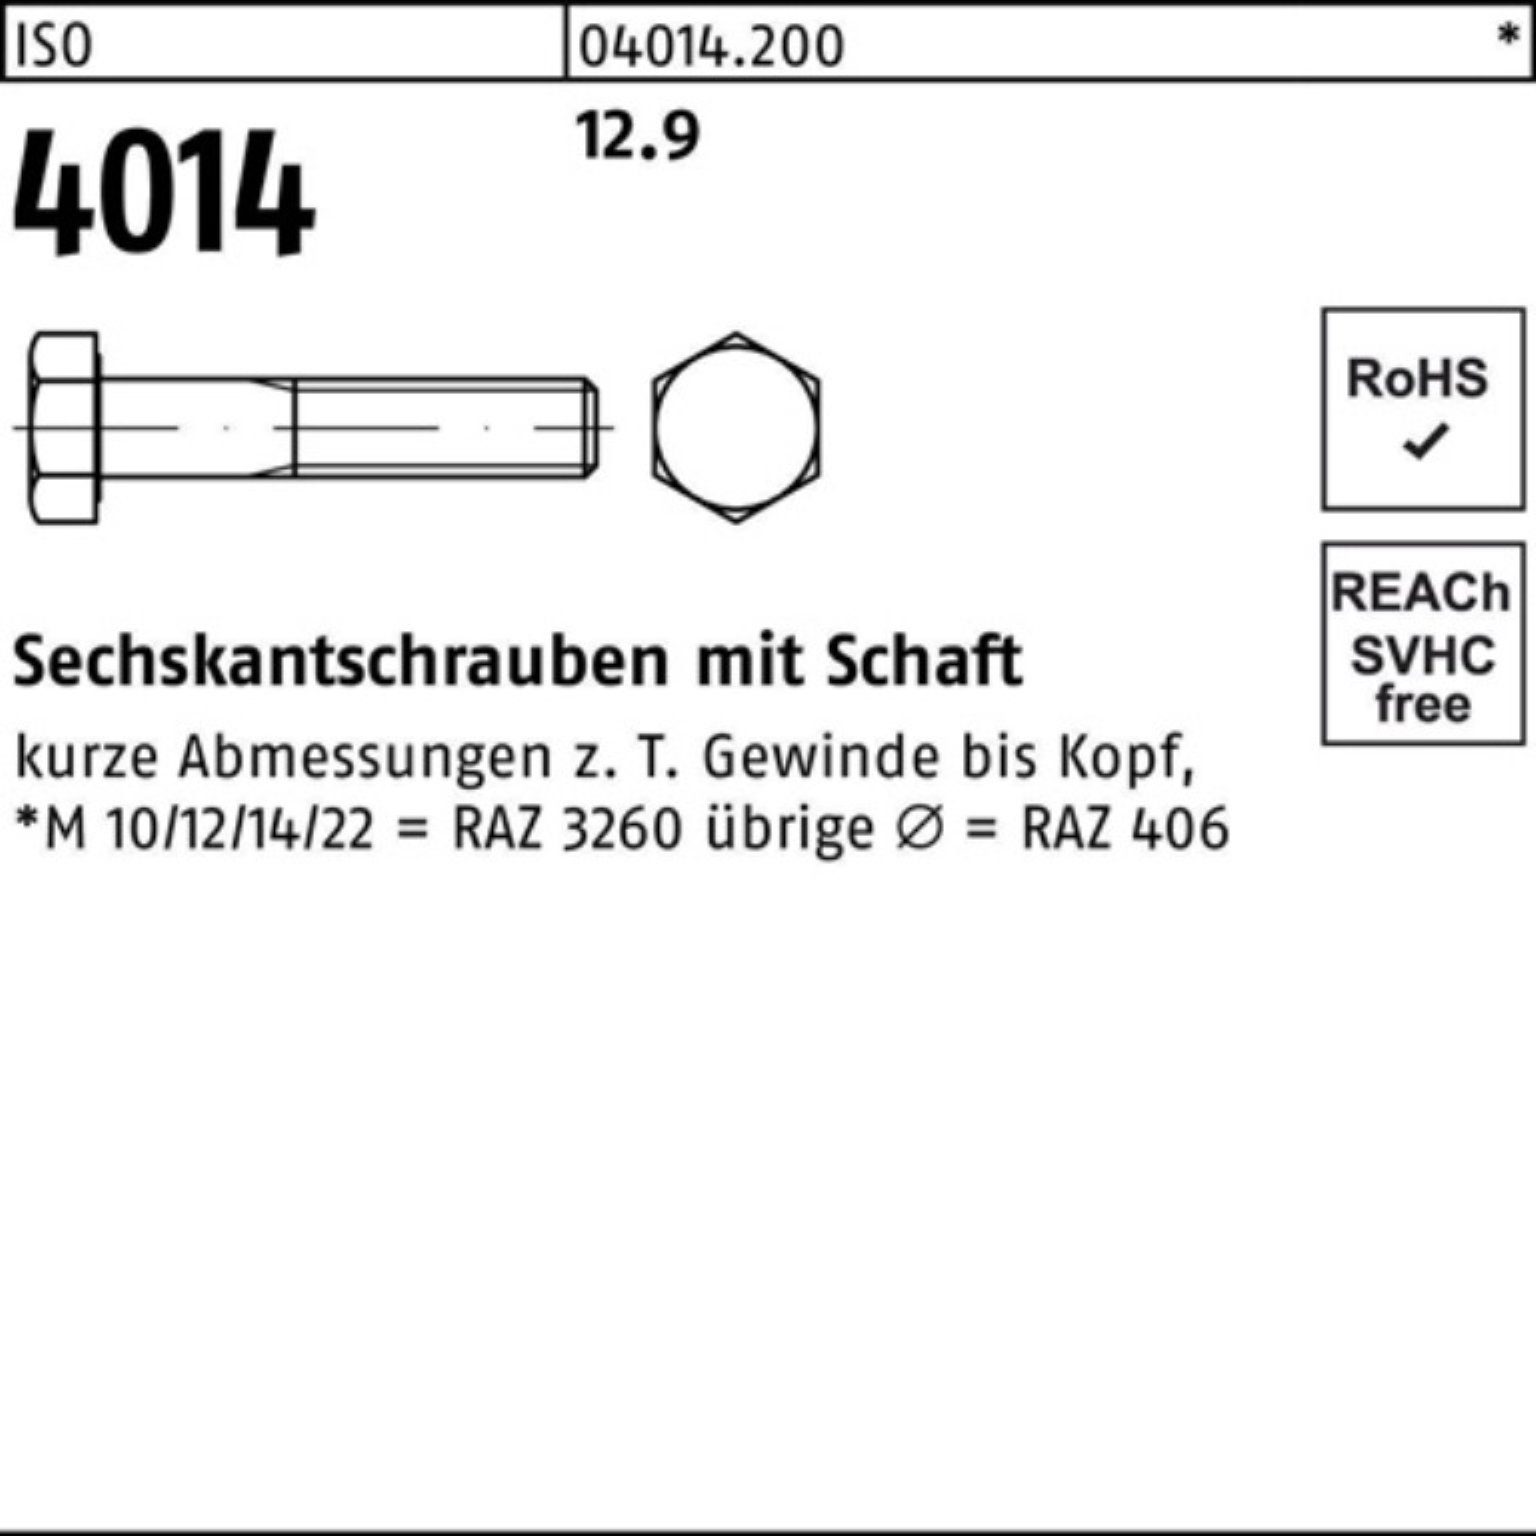 4014 Pack Stück I 10 M24x 12.9 ISO Schaft Sechskantschraube Sechskantschraube 100er 160 Bufab